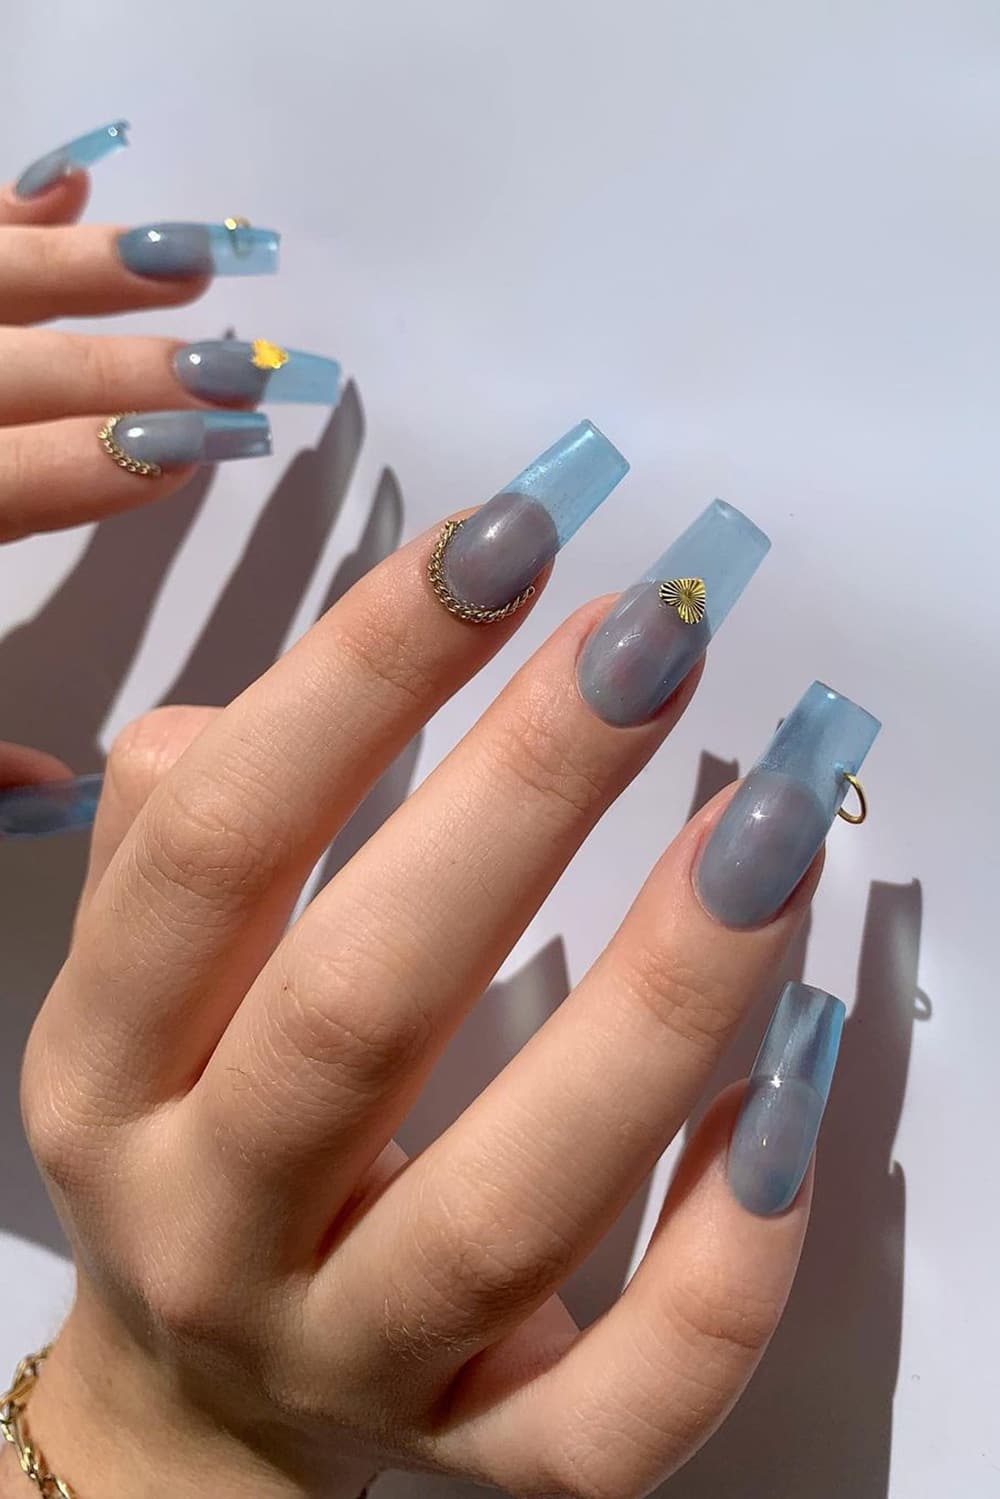 Gray-blue jelly nails